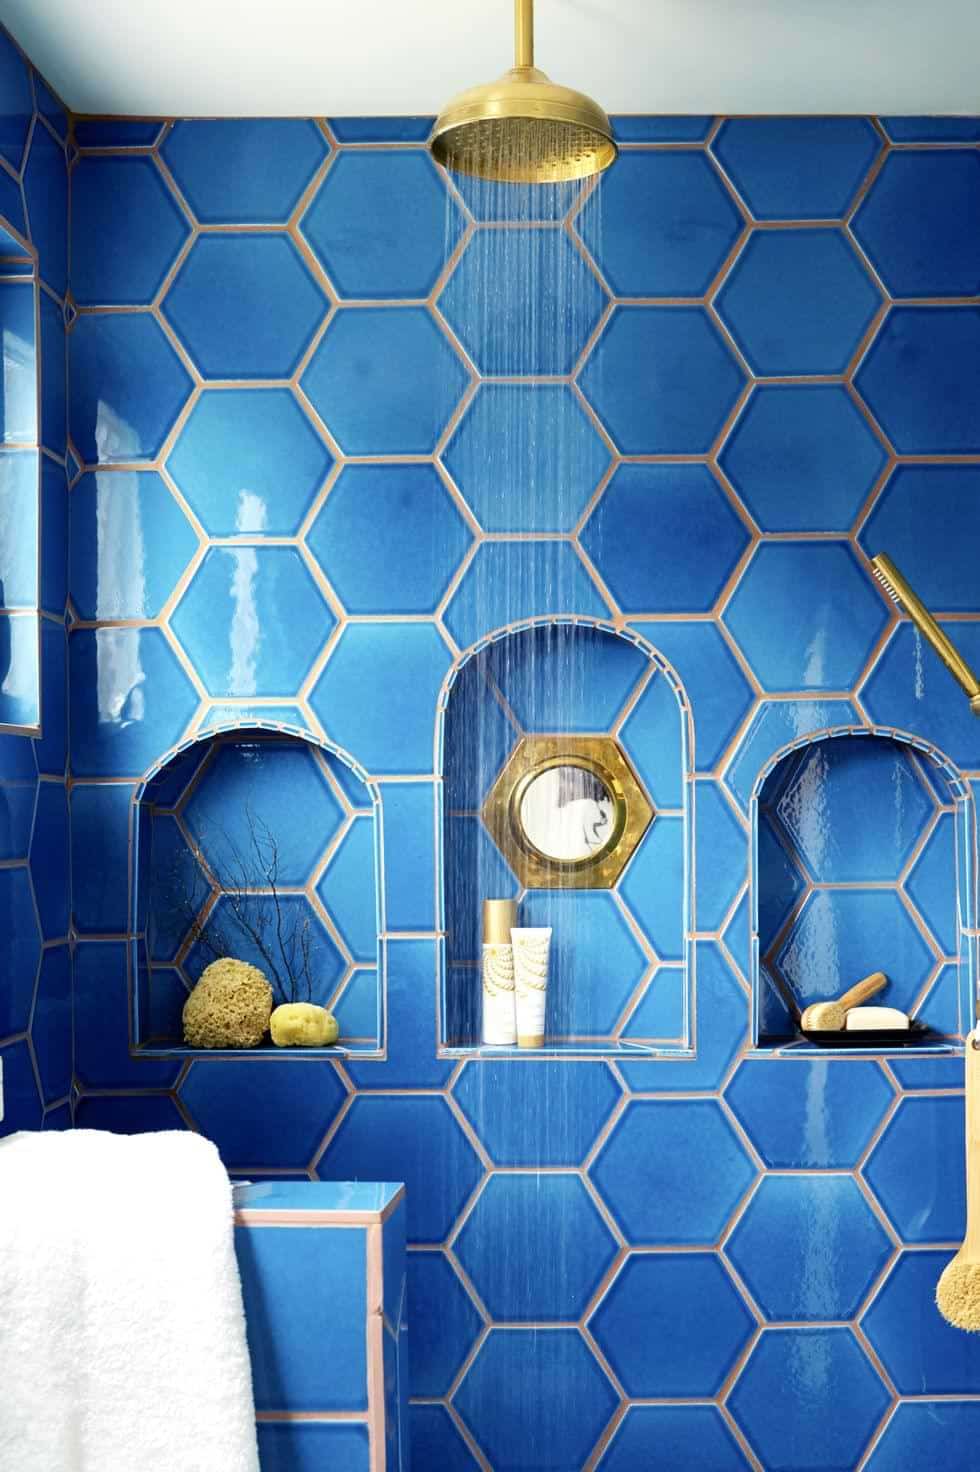 Hexagonal blue tiles in shower